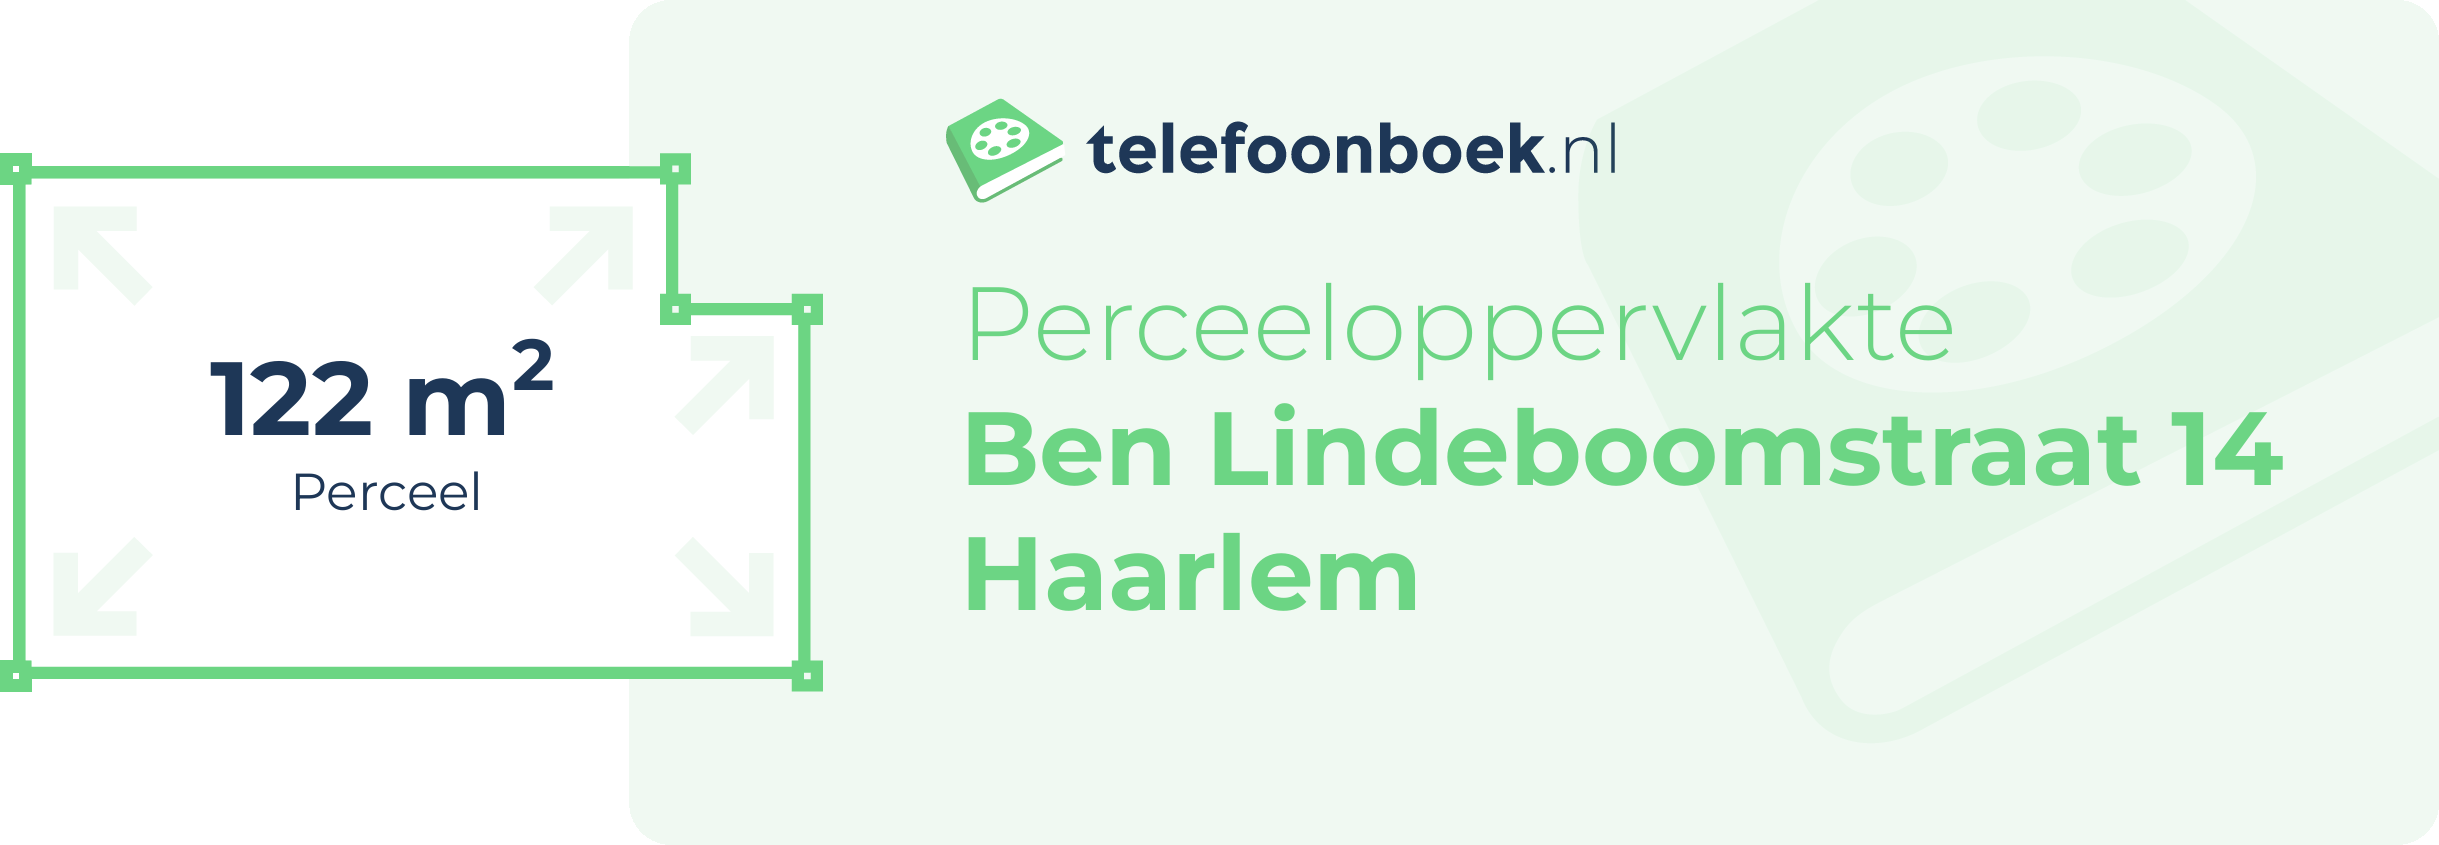 Perceeloppervlakte Ben Lindeboomstraat 14 Haarlem